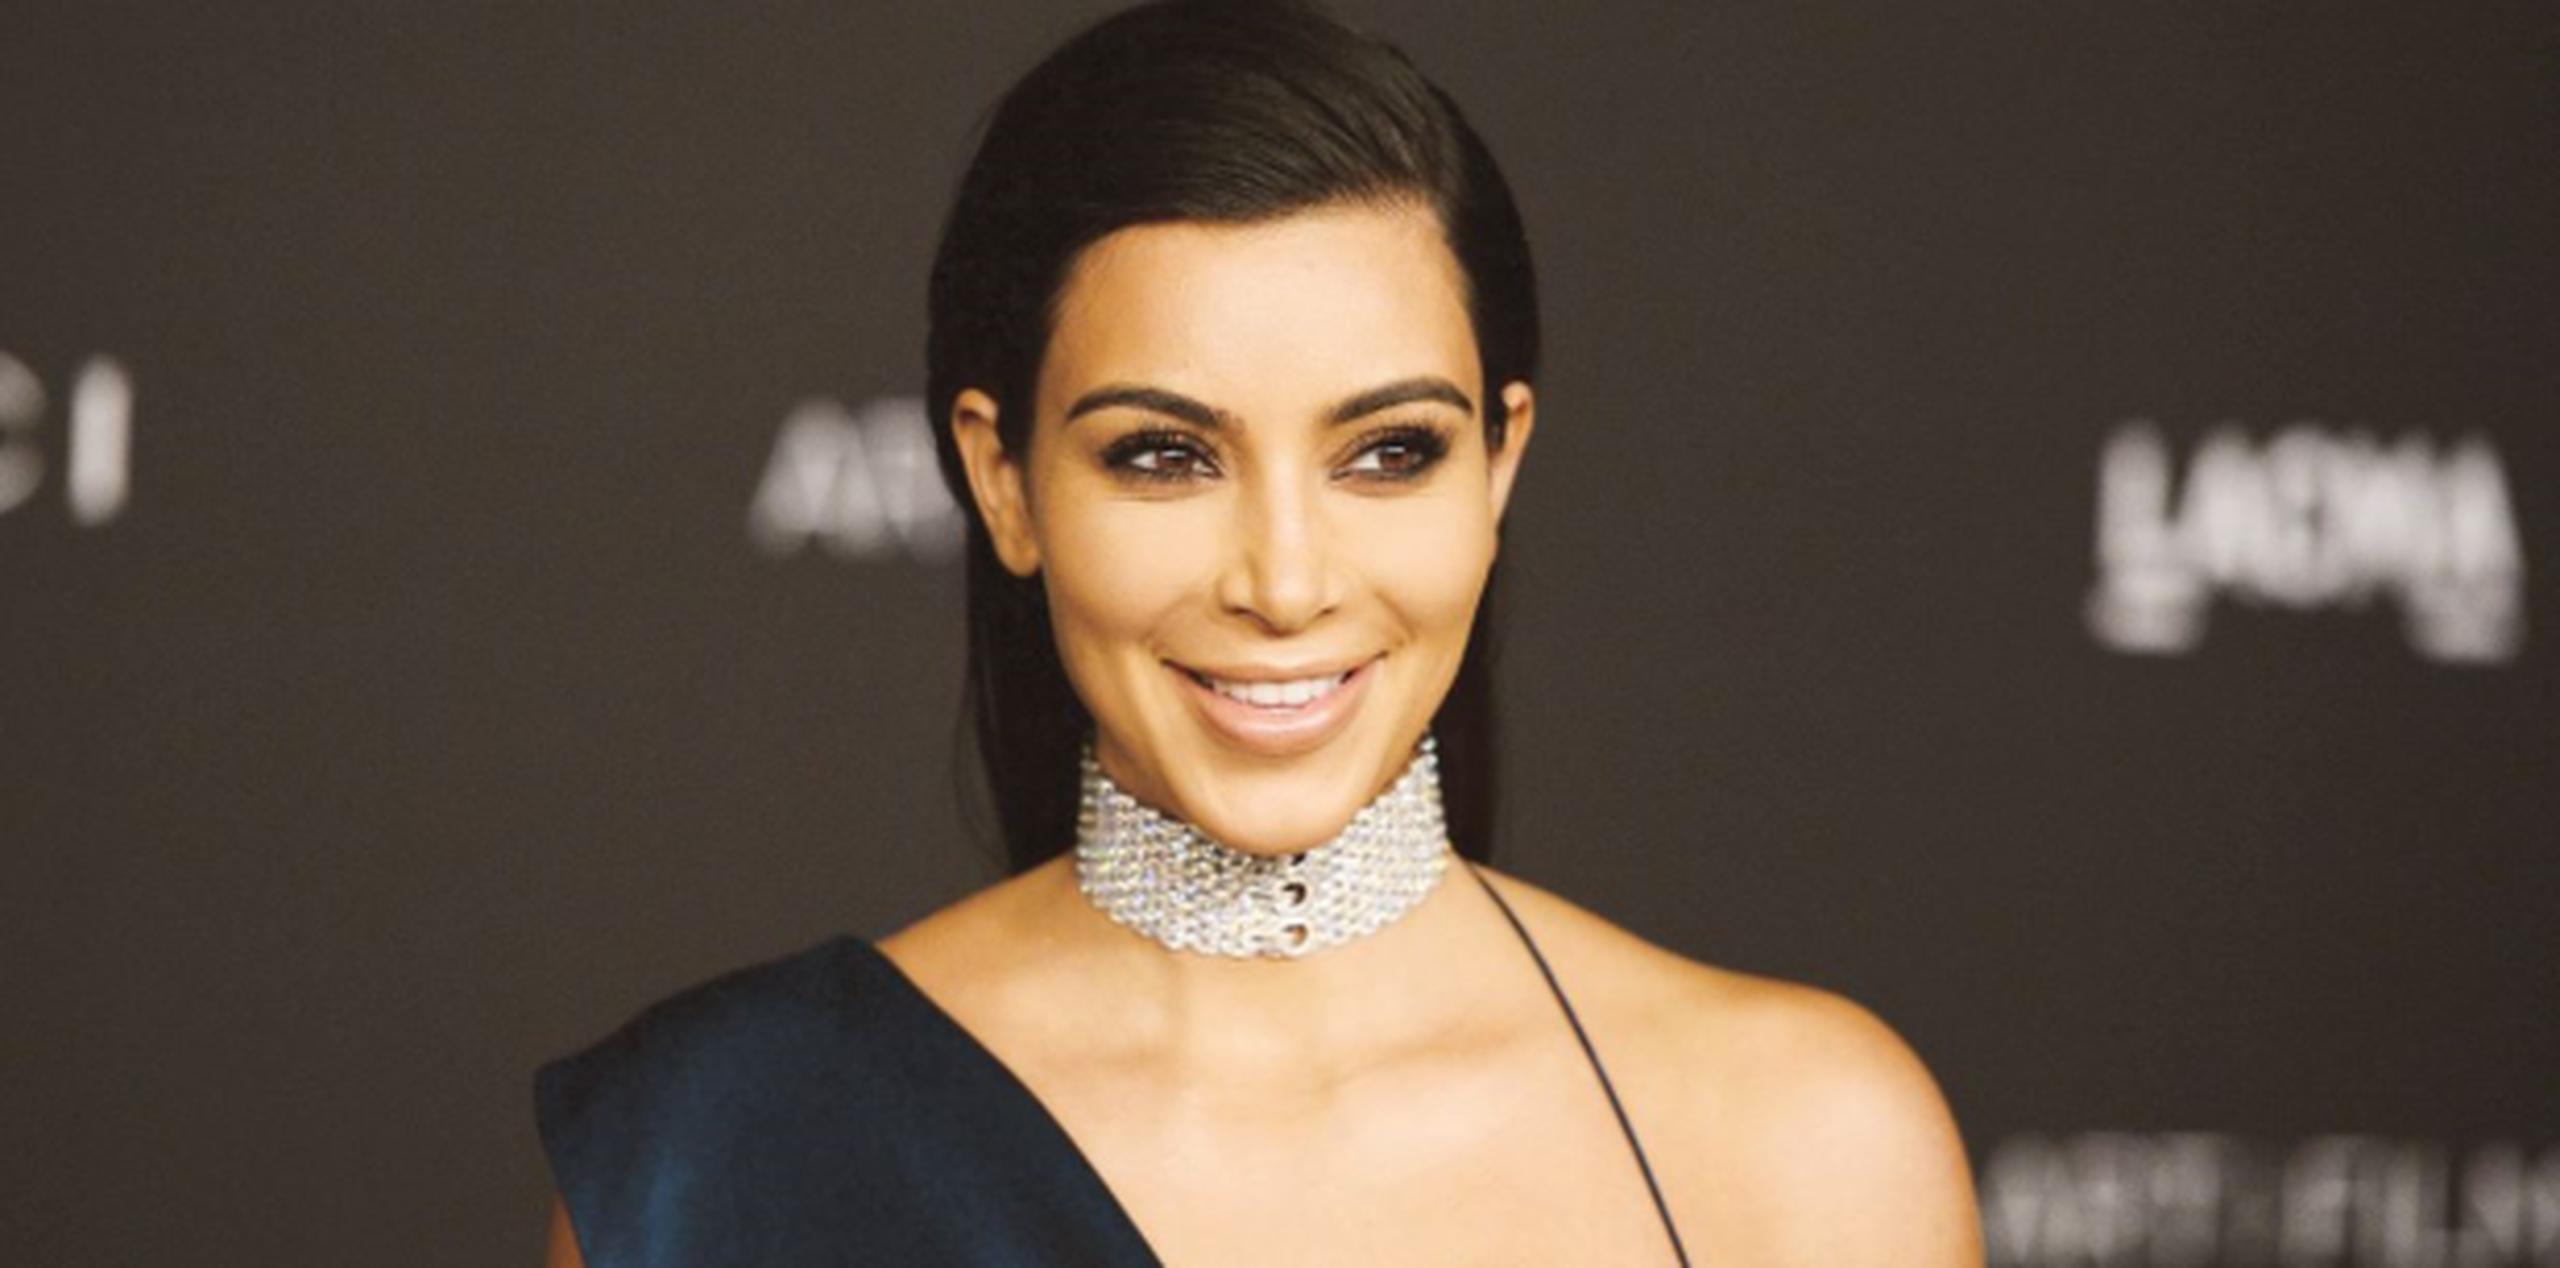 La esposa de Kanye West subió una foto en su cuentra de Instagram dejando sus pechos al descubierto casi en su totalidad y apoyados con cintas adhesivas en los lados. (Archivo)